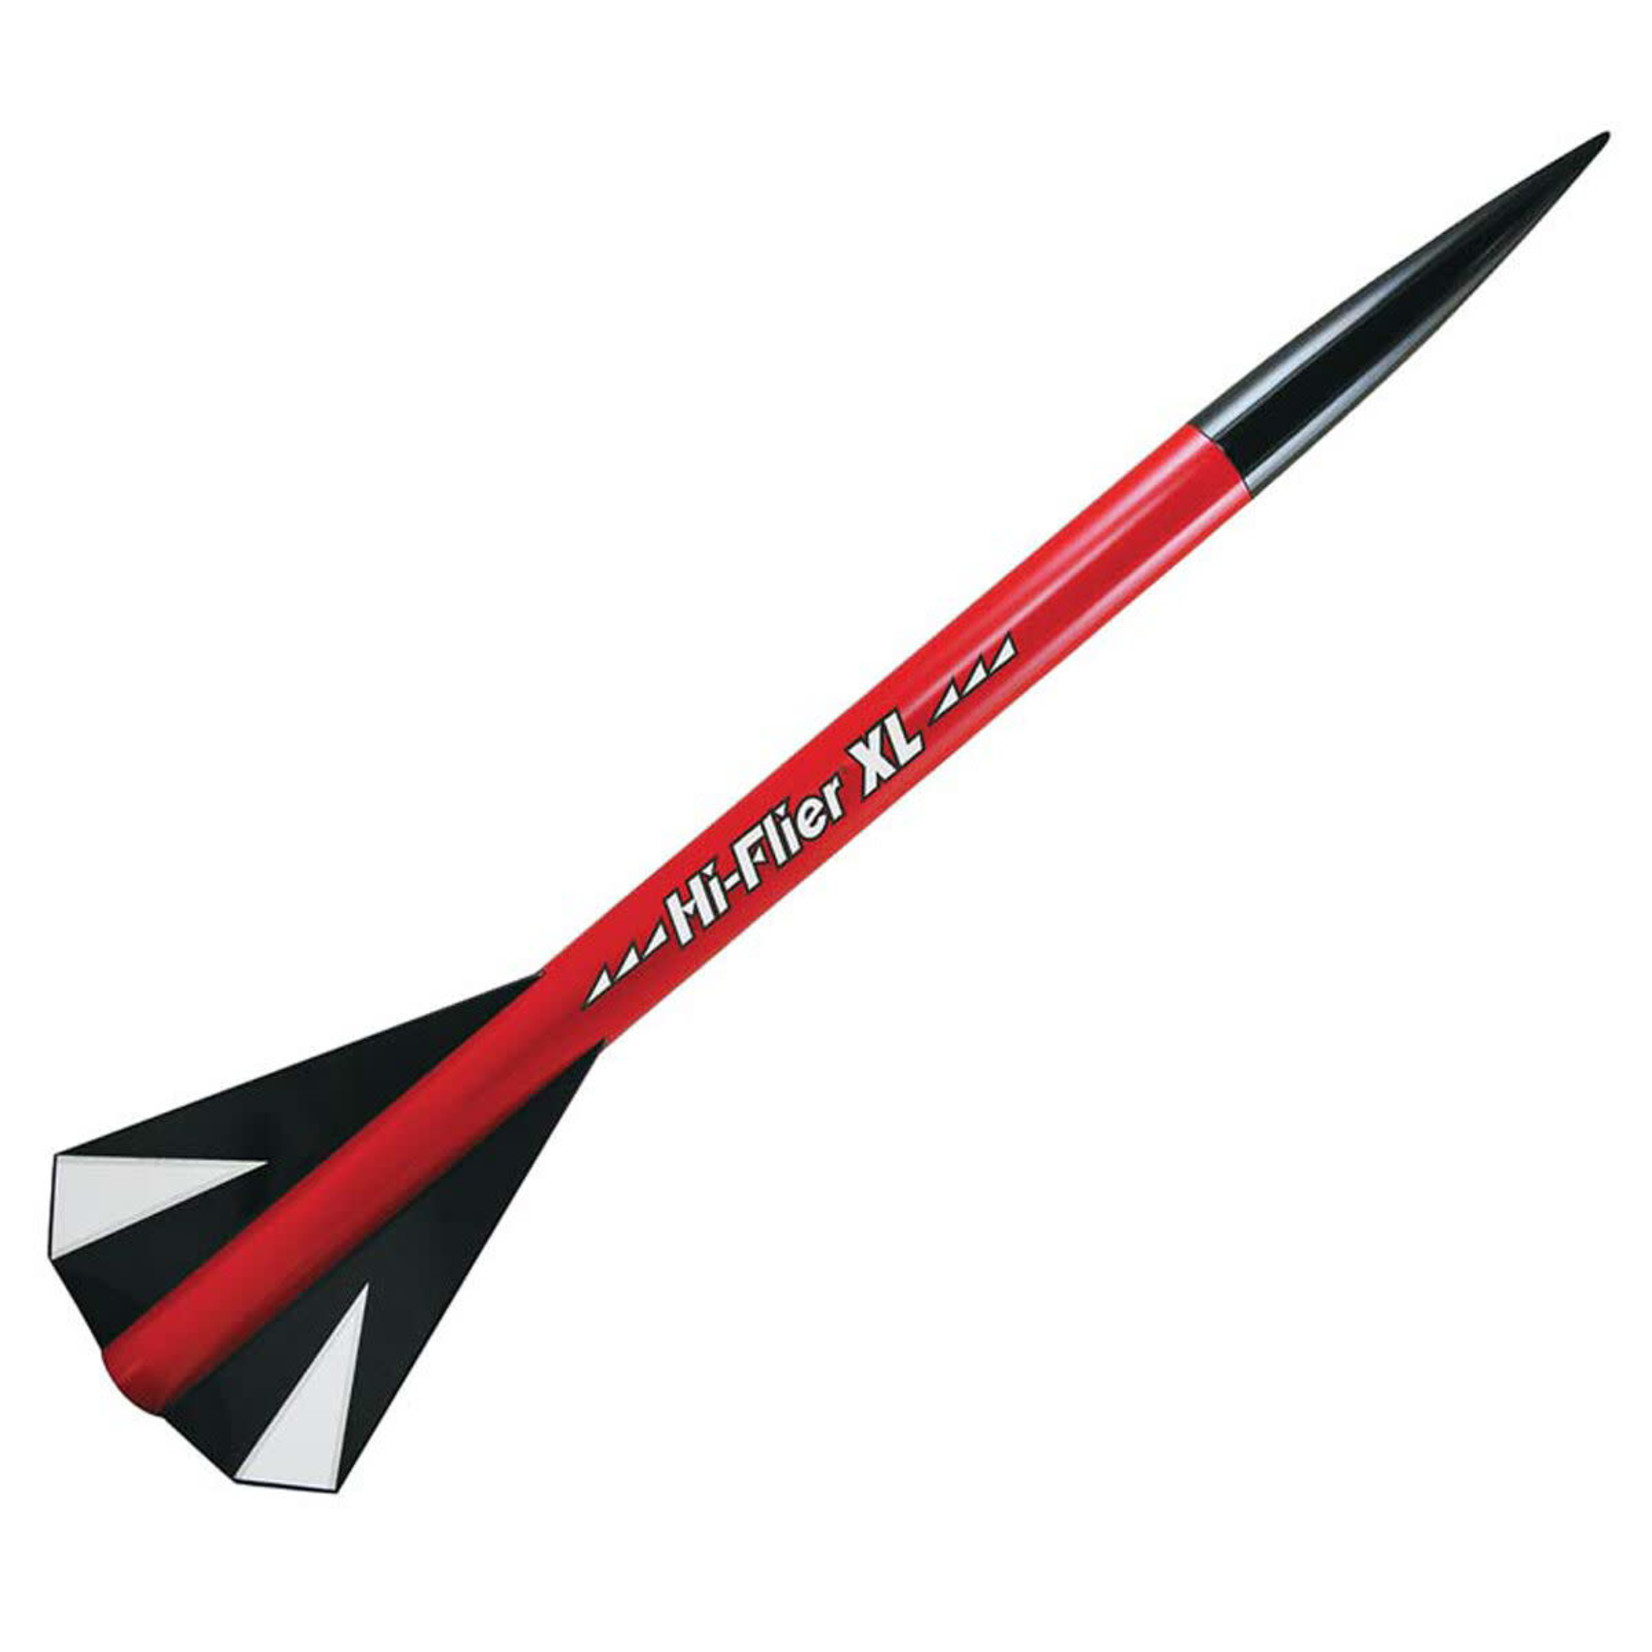 Estes EST3226 Estes Flying Model Rocket Hi Flier XL Advanced Kit Skill Level 3 Kit